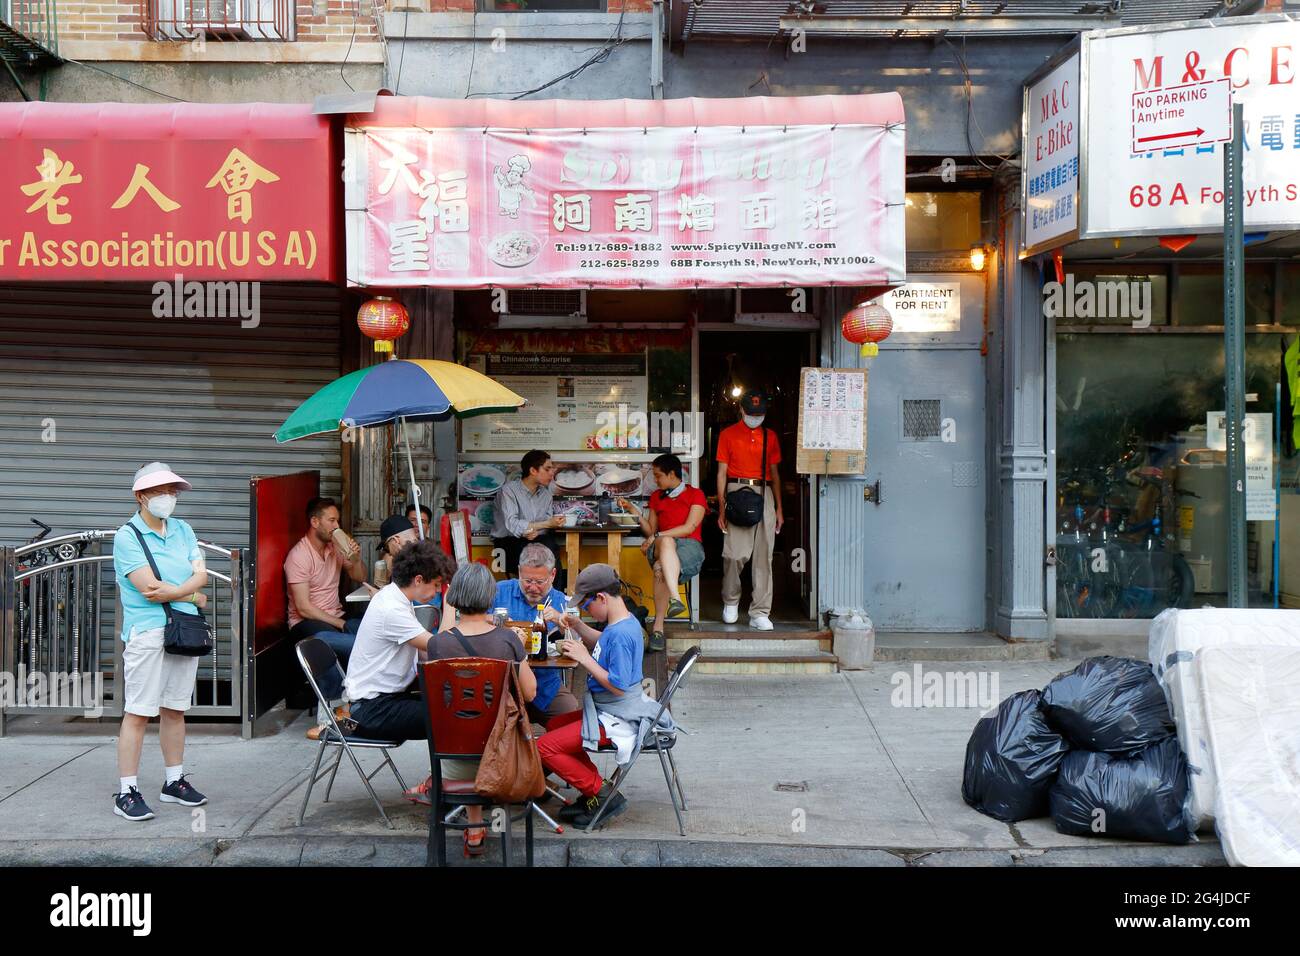 Spicy Village, 68 Forsyth St, New York, NYC Foto von einem Henan-Restaurant in Manhattan, Chinatown. Stockfoto